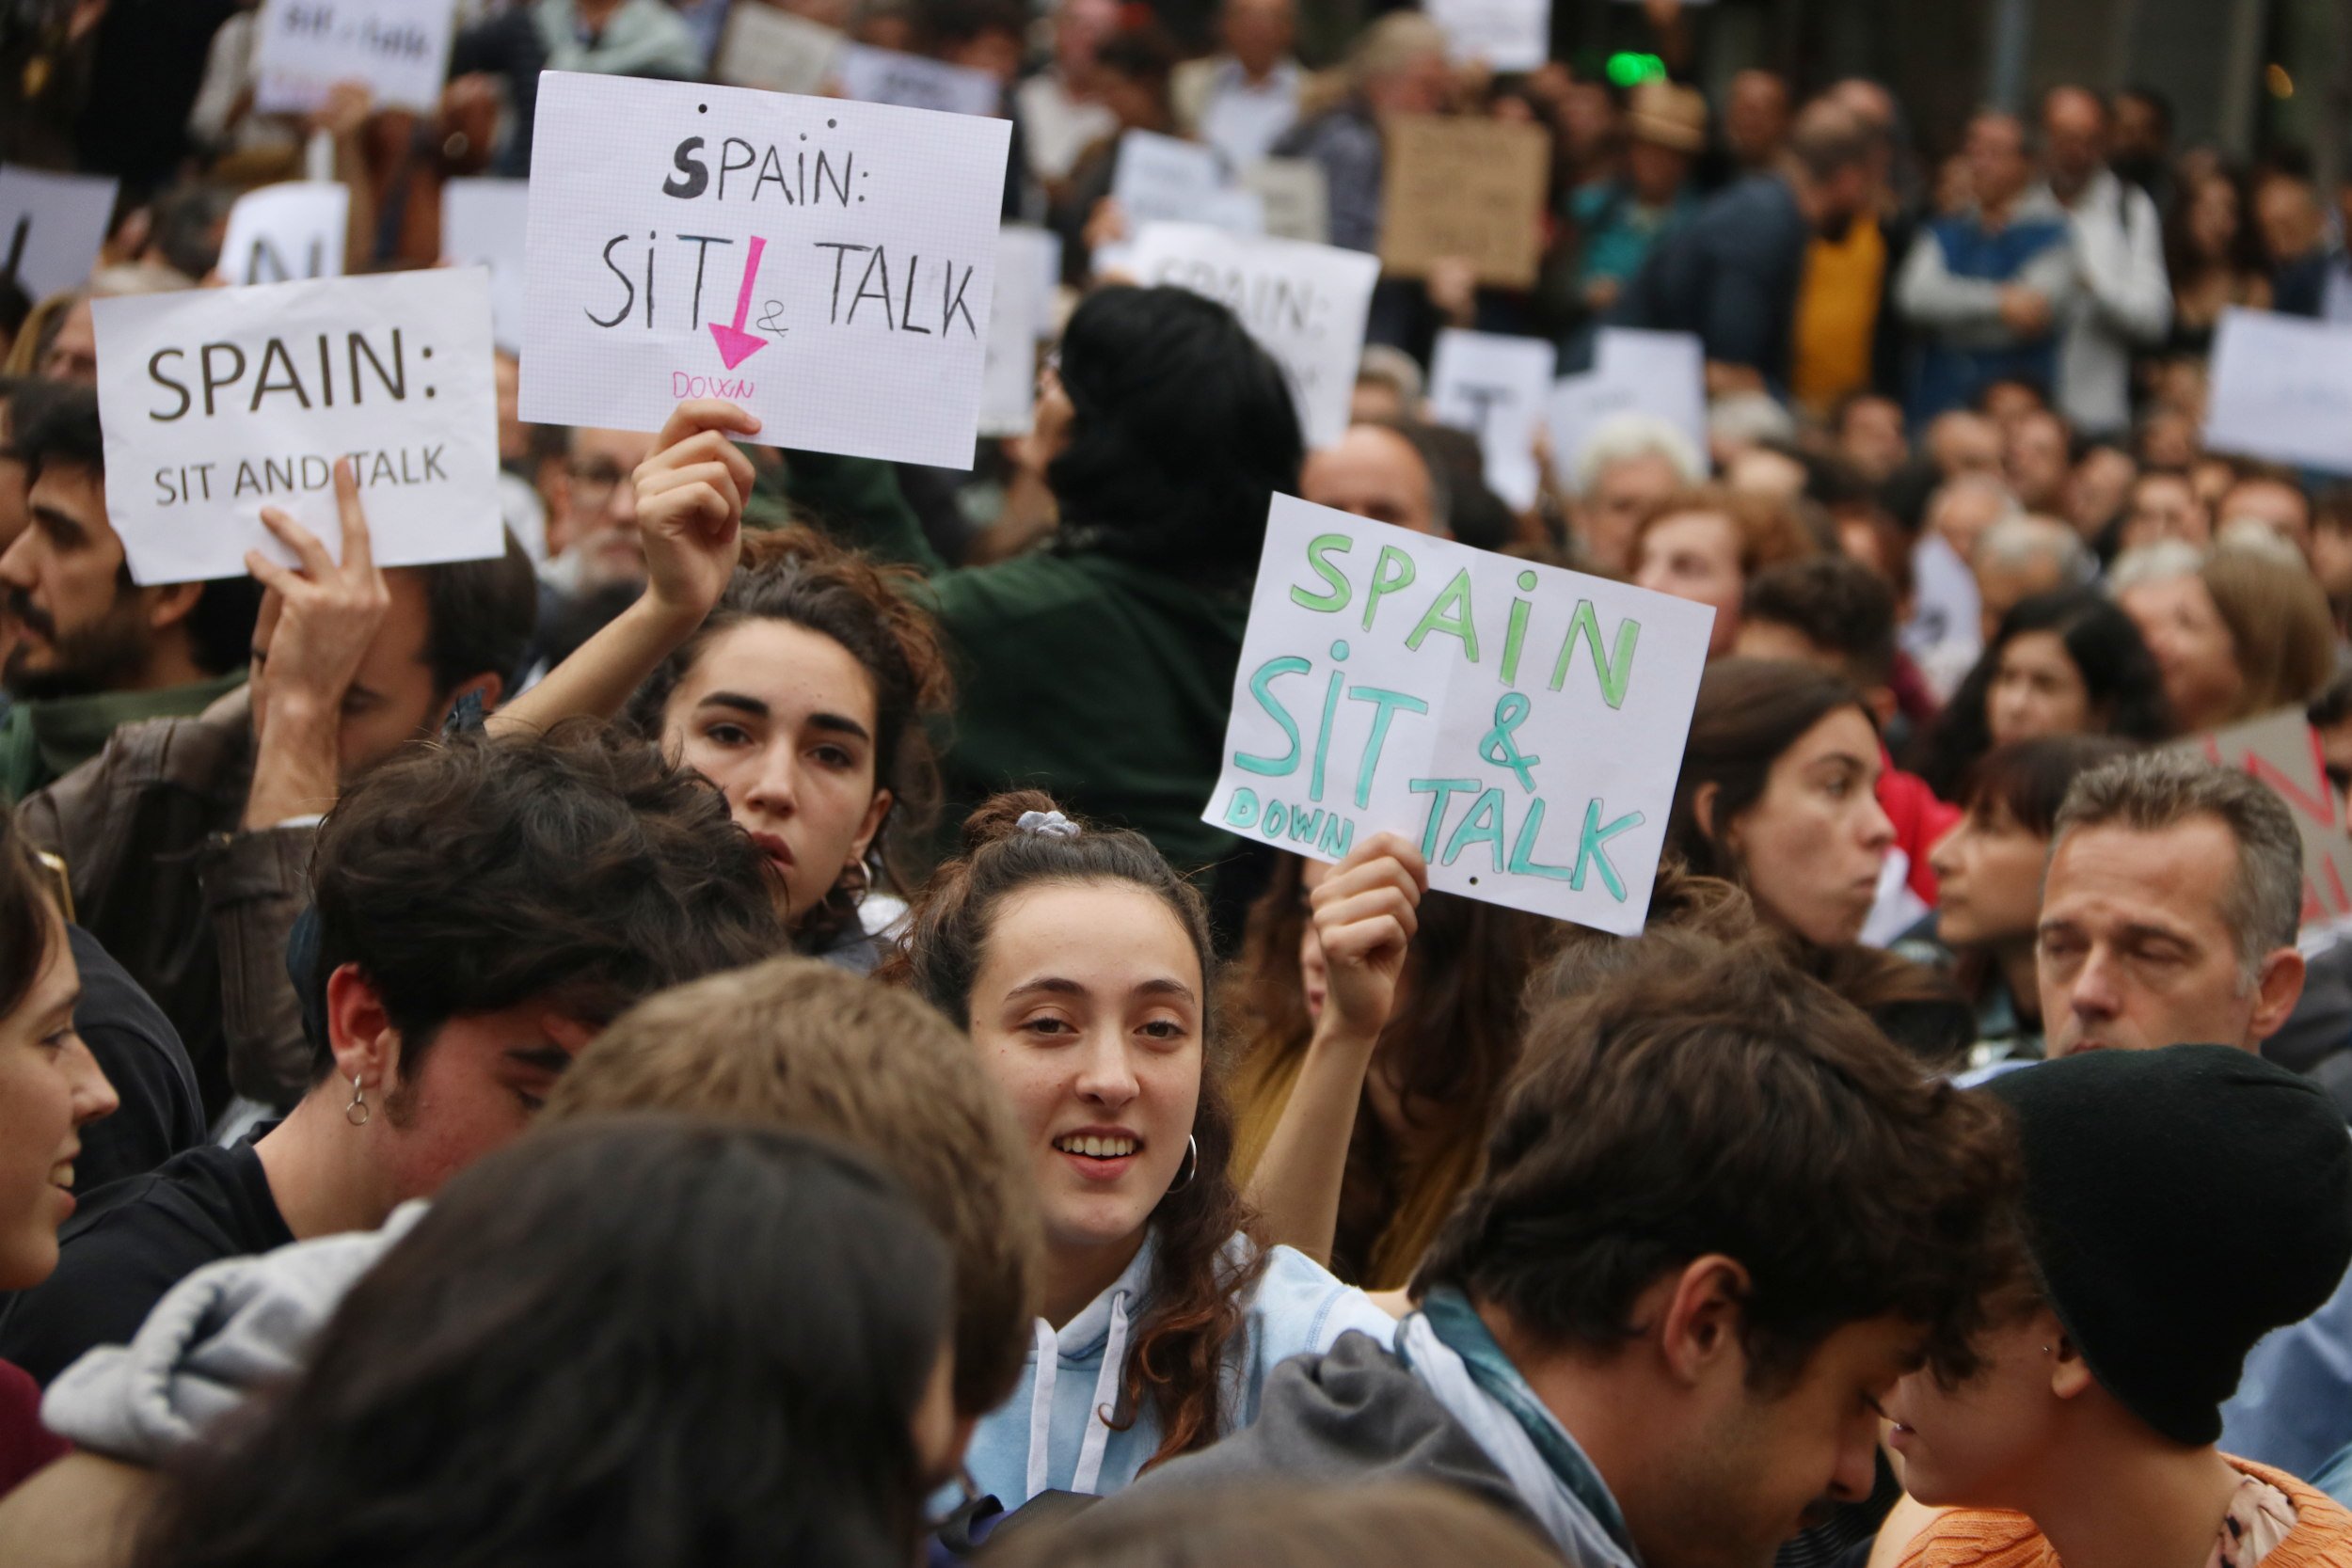 La conclusión de la radio suiza: "Catalunya no deja a nadie frío"